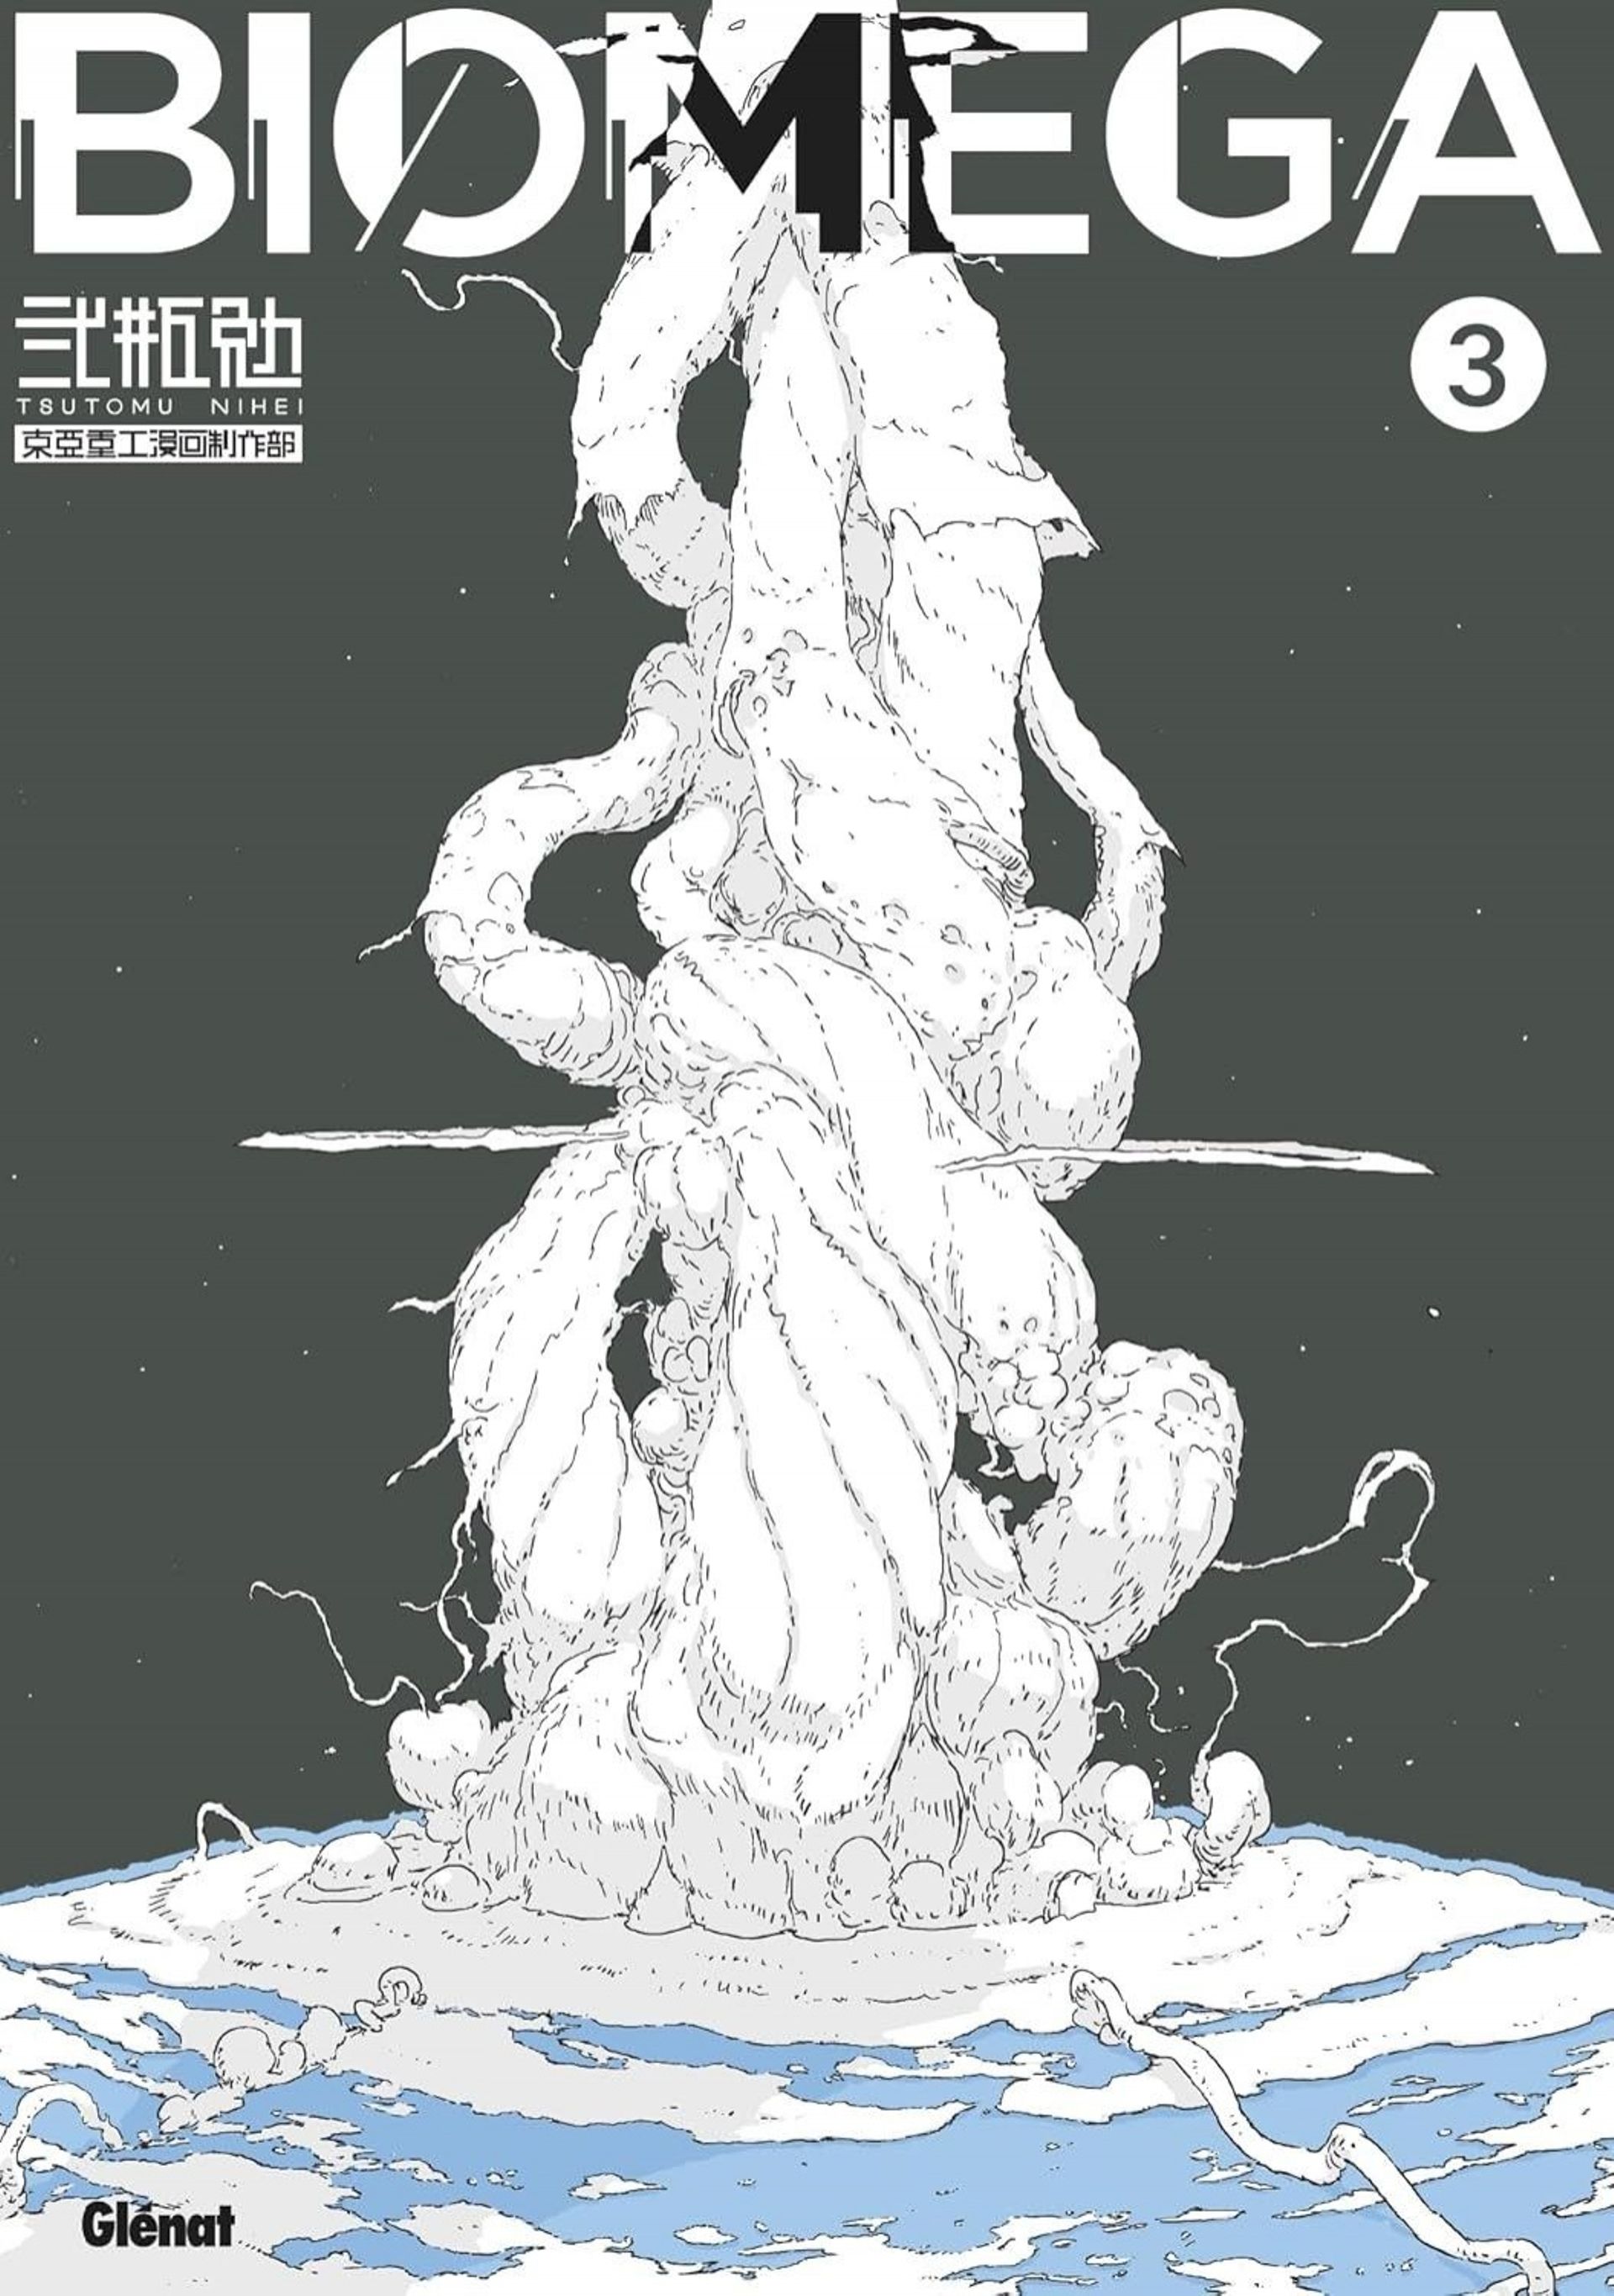 Couverture du volume 3 du manga Biomega publié chez Glénat.